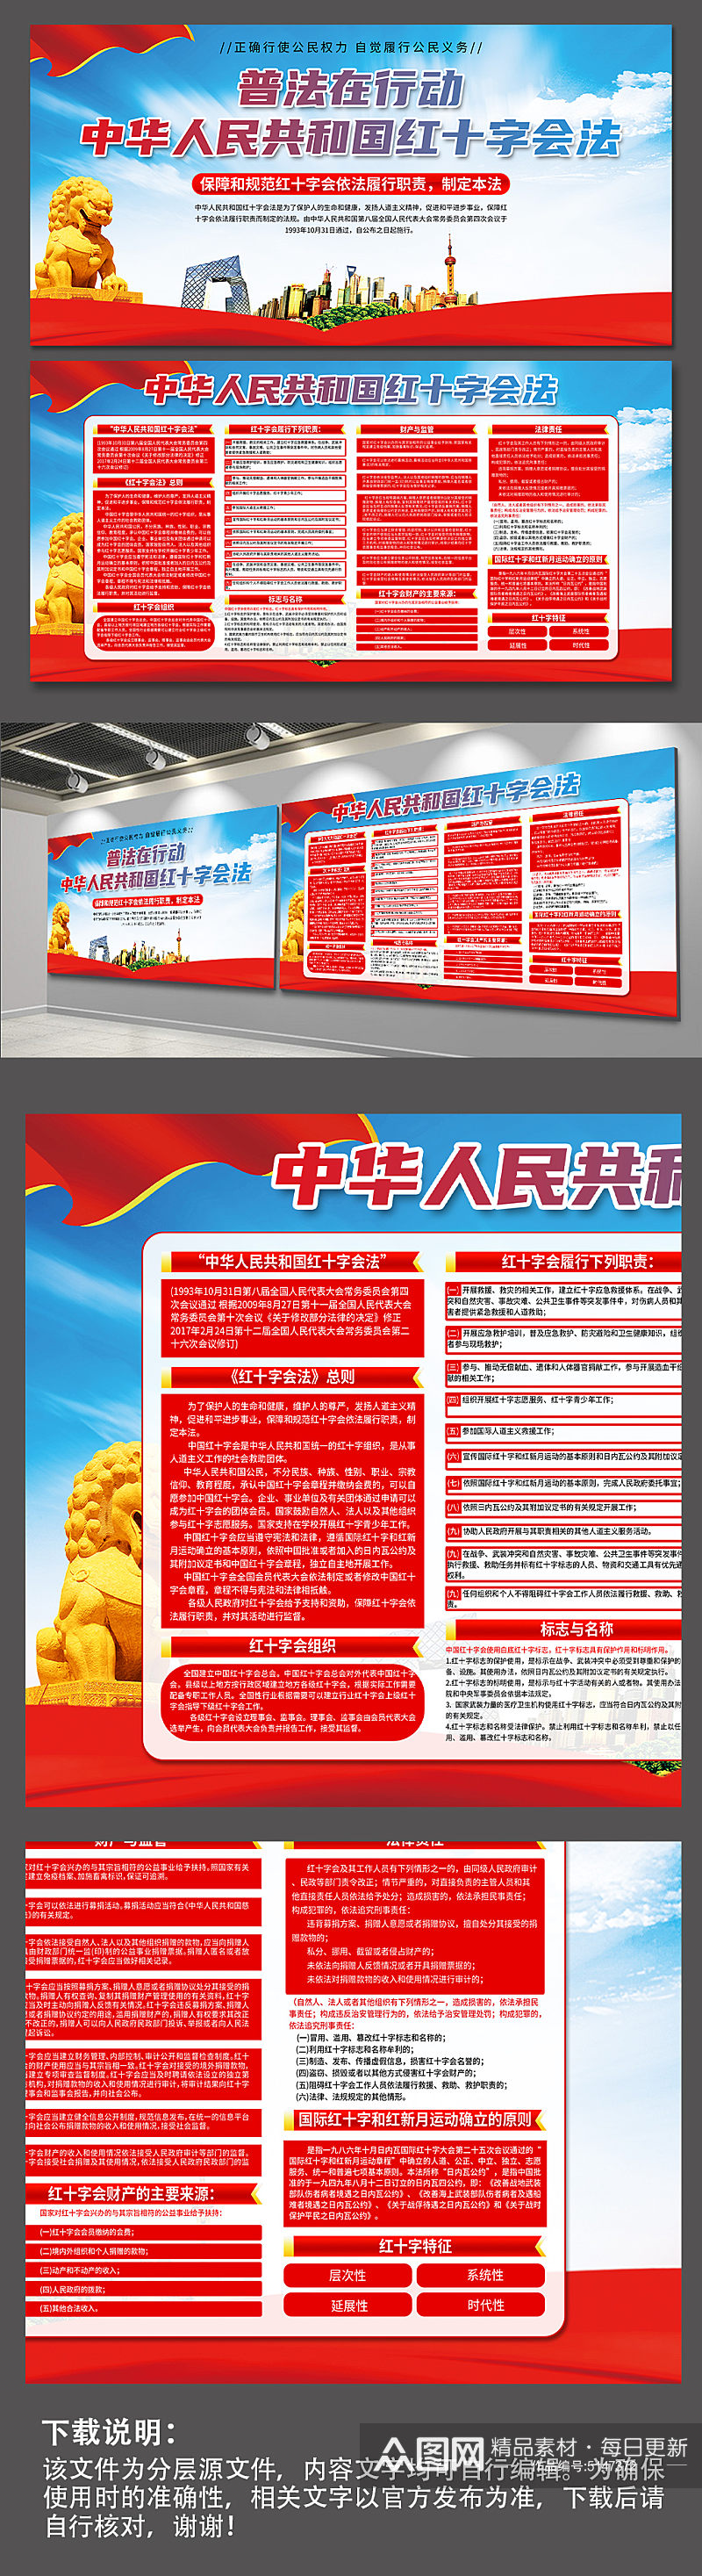 中华人民共和国红十字会法党建展板素材